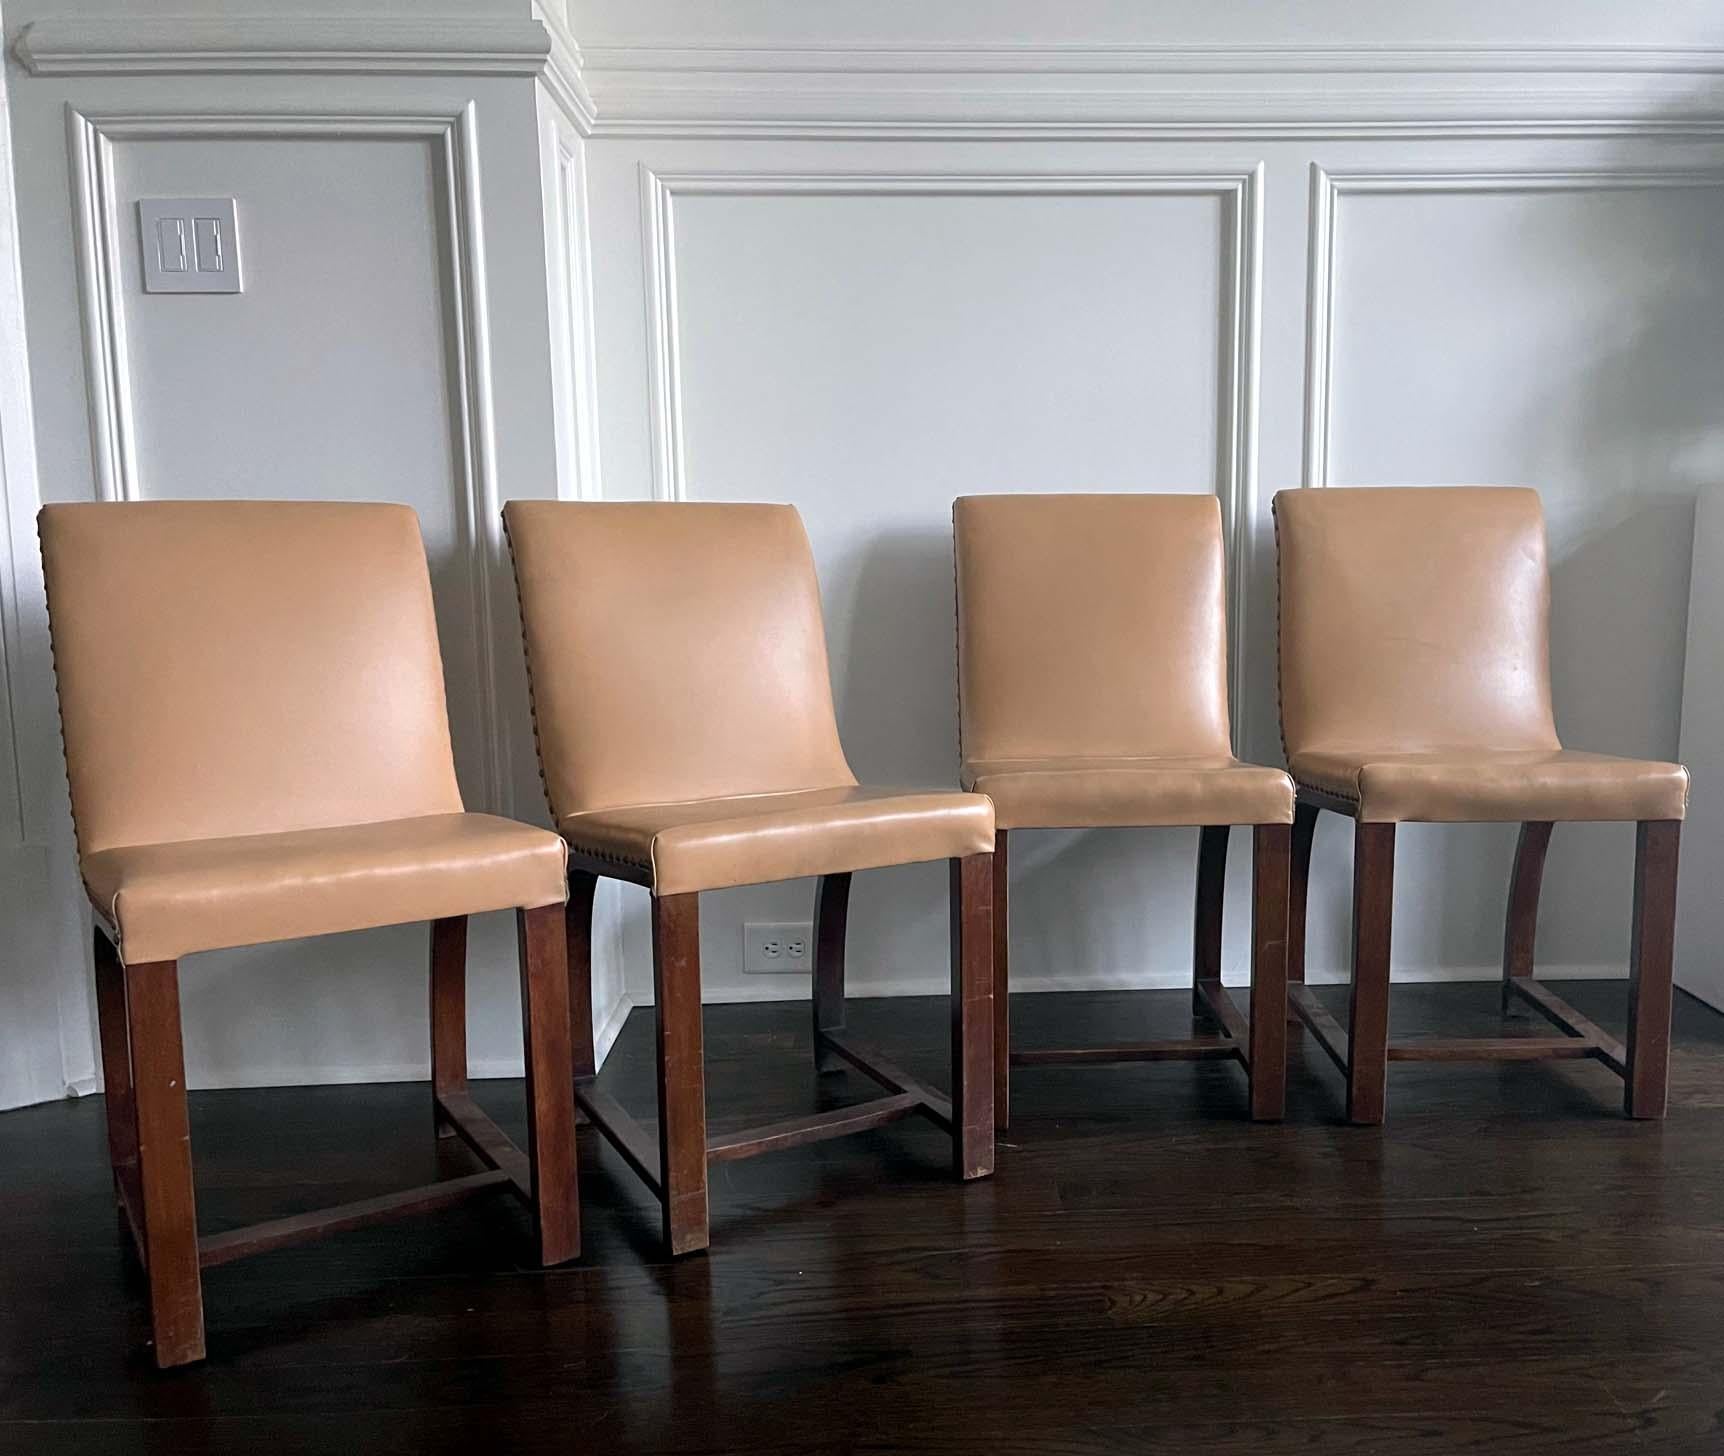 Ein Satz von vier Stühlen, entworfen in den 1930er Jahren von Gilbert Rohde für Heywood Wakefield Gardener MA. Mahagoni-Konstruktion mit gewölbter Rückenlehne. Die cremefarbene Naugahyde-Polsterung mit dekorativen Messingarmaturen ist wahrscheinlich